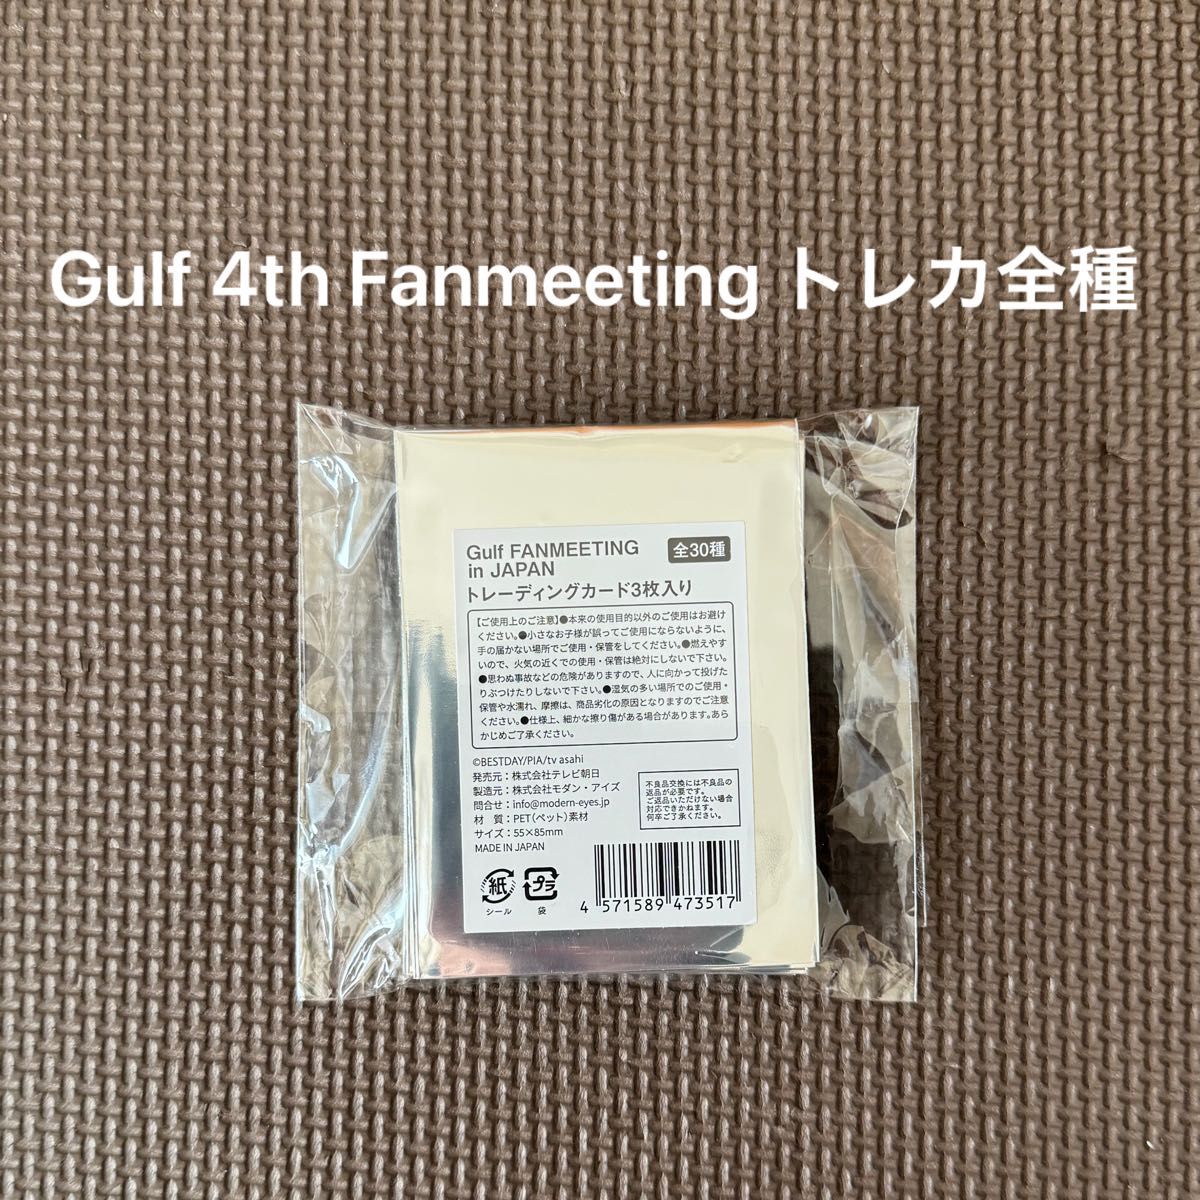 【値下げ】Gulf 4th Fanmeeting トレカ全種